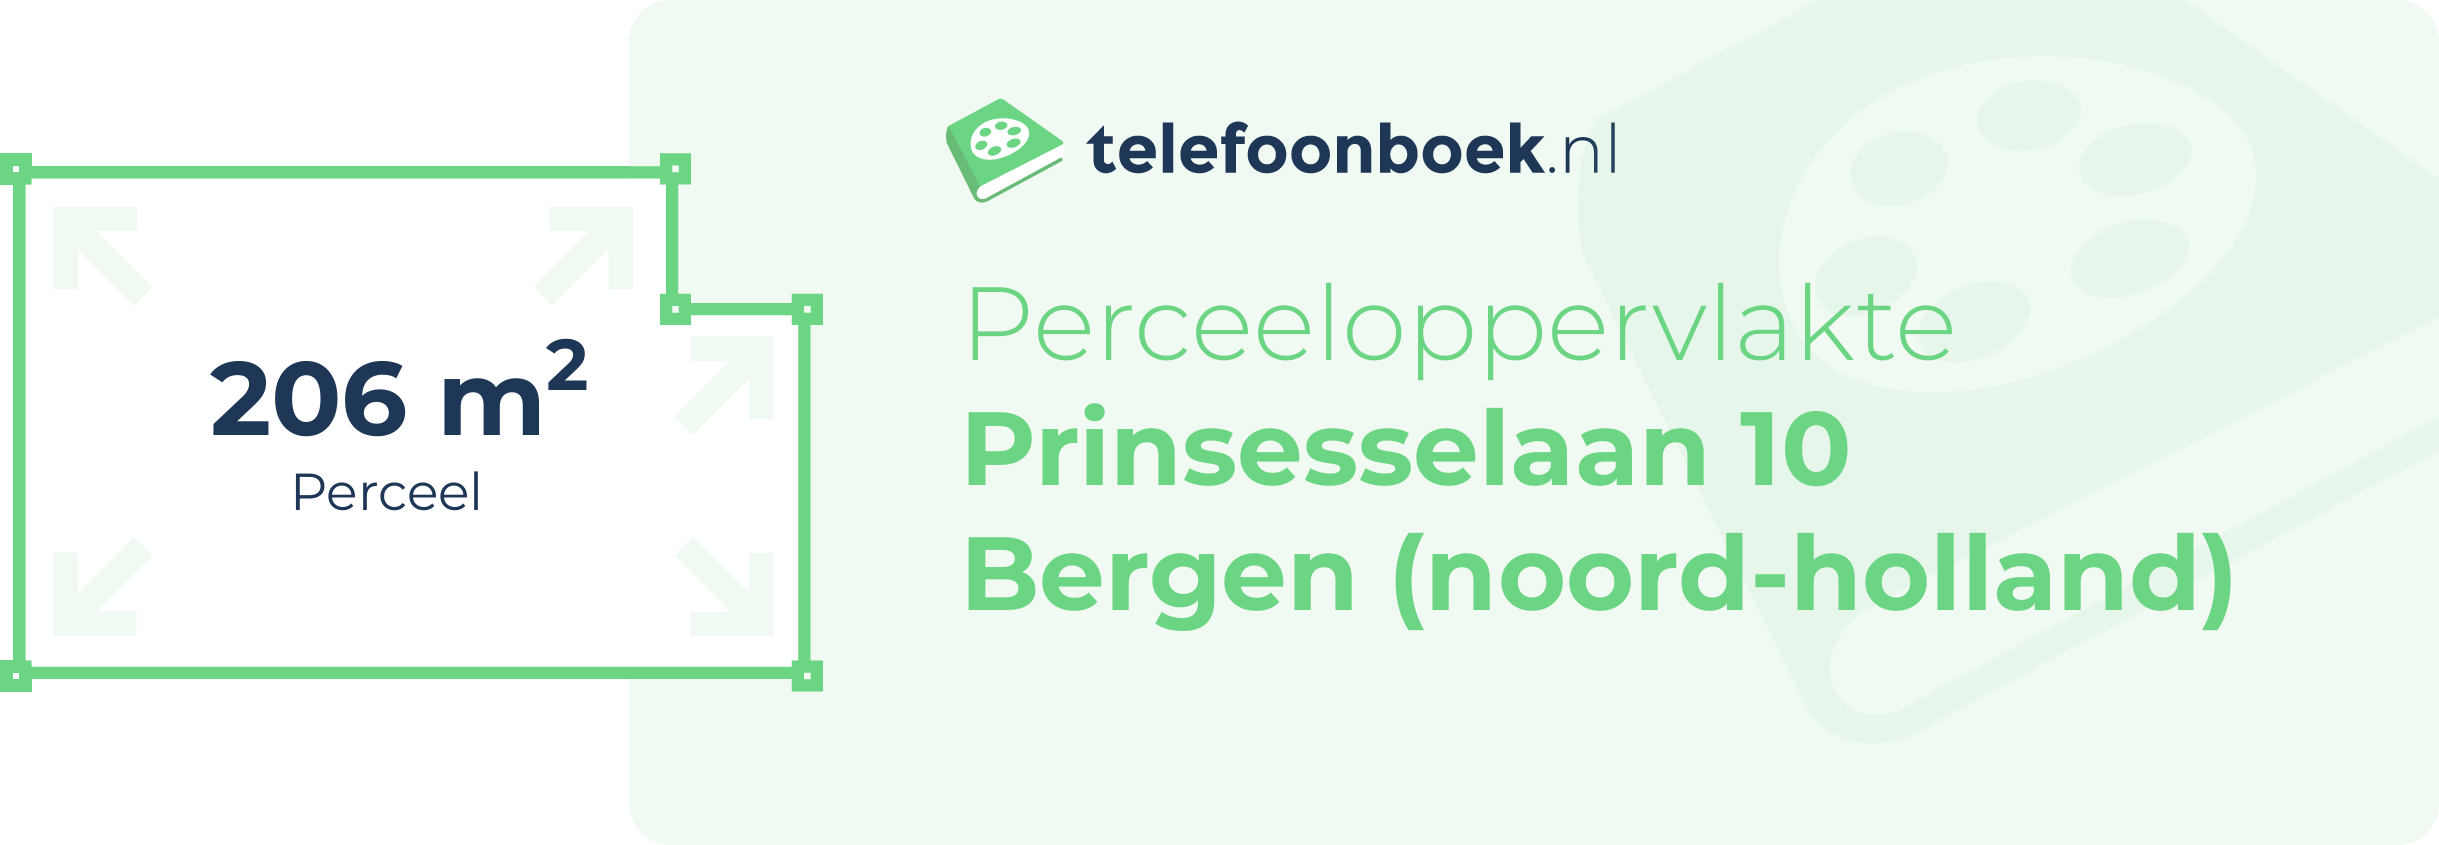 Perceeloppervlakte Prinsesselaan 10 Bergen (Noord-Holland)